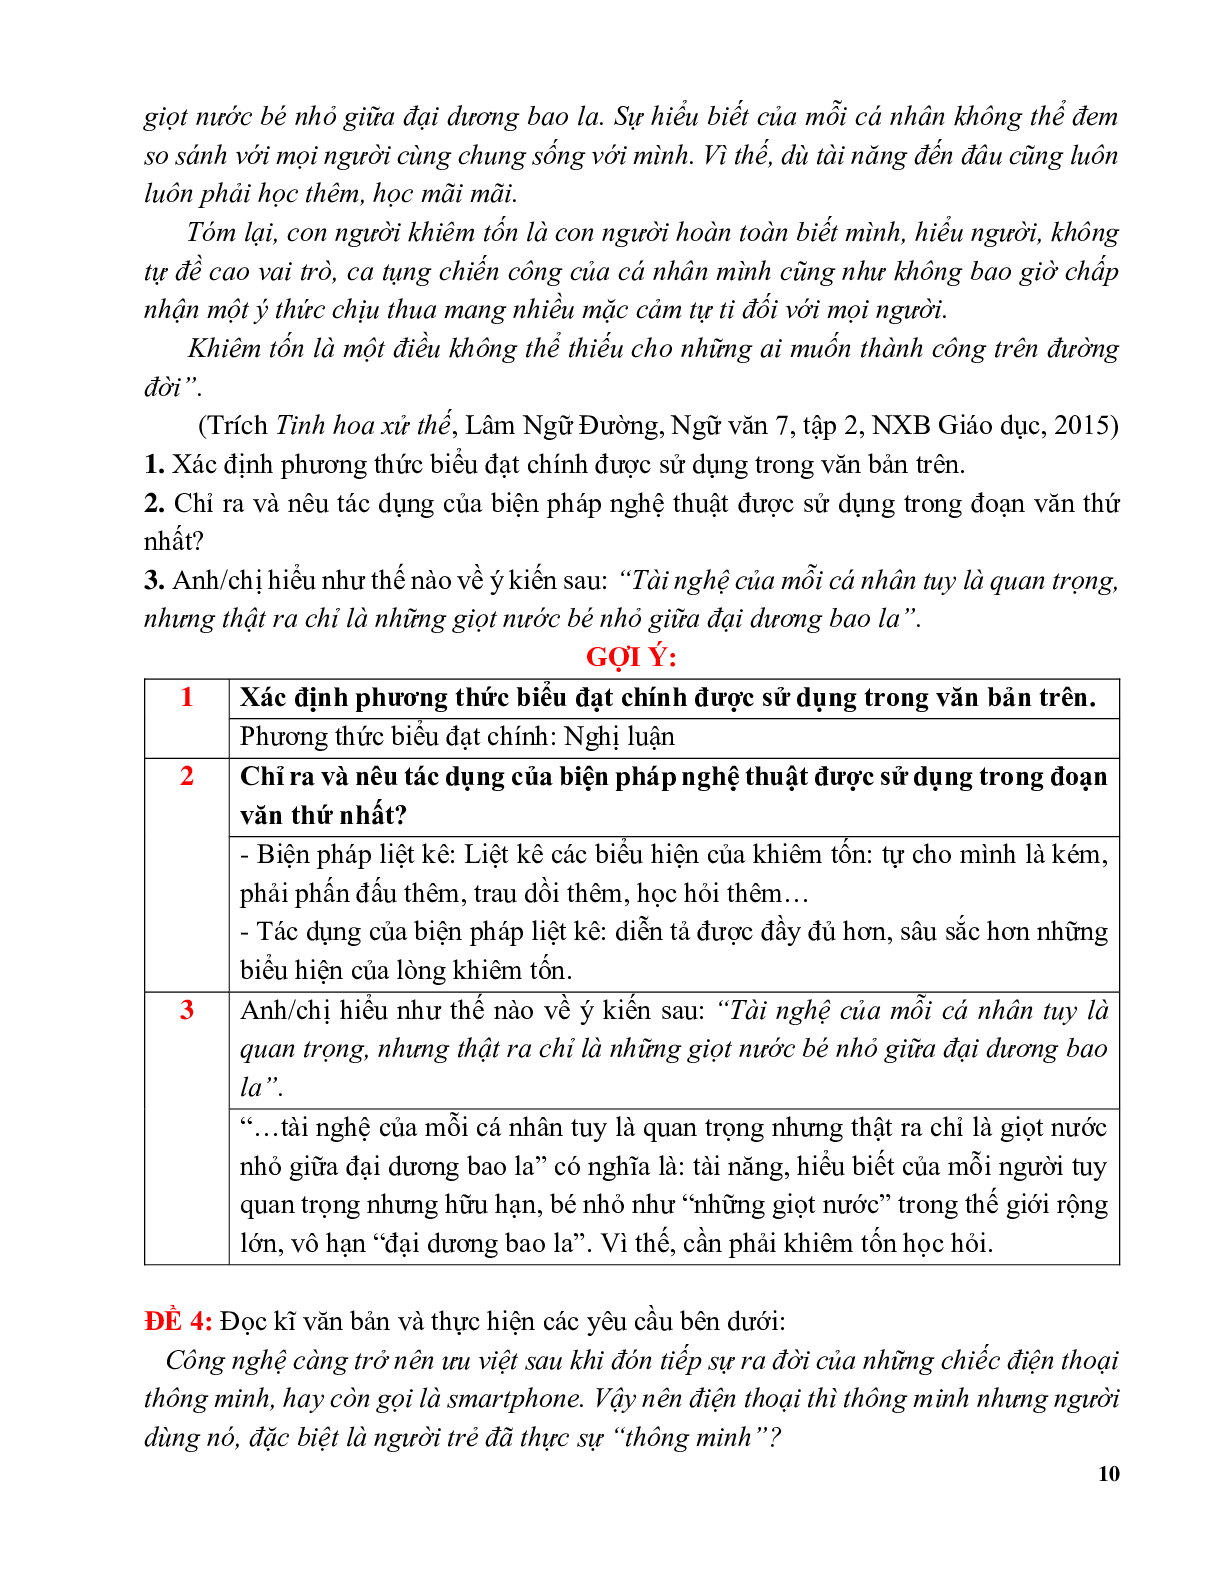 81 bộ đề đọc hiểu môn ngữ văn lớp 9 (trang 10)